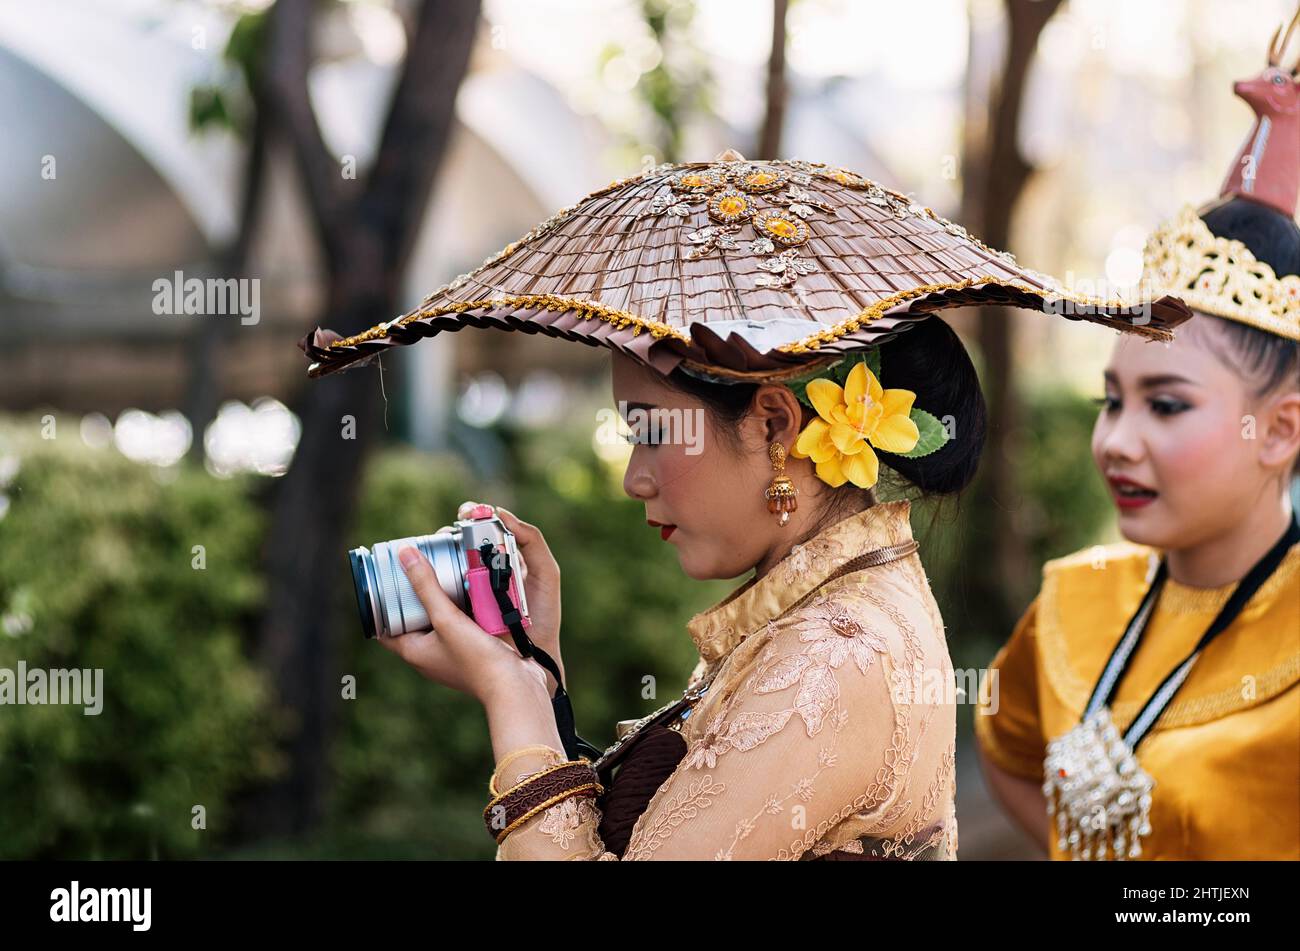 Bangkok, Thailand - 04.20.2017: Ethnische Frau trägt authentische Kostüme und Accessoires und fotografiert im Garten während eines Spaziergangs mit einer Freundin mit der Kamera Stockfoto